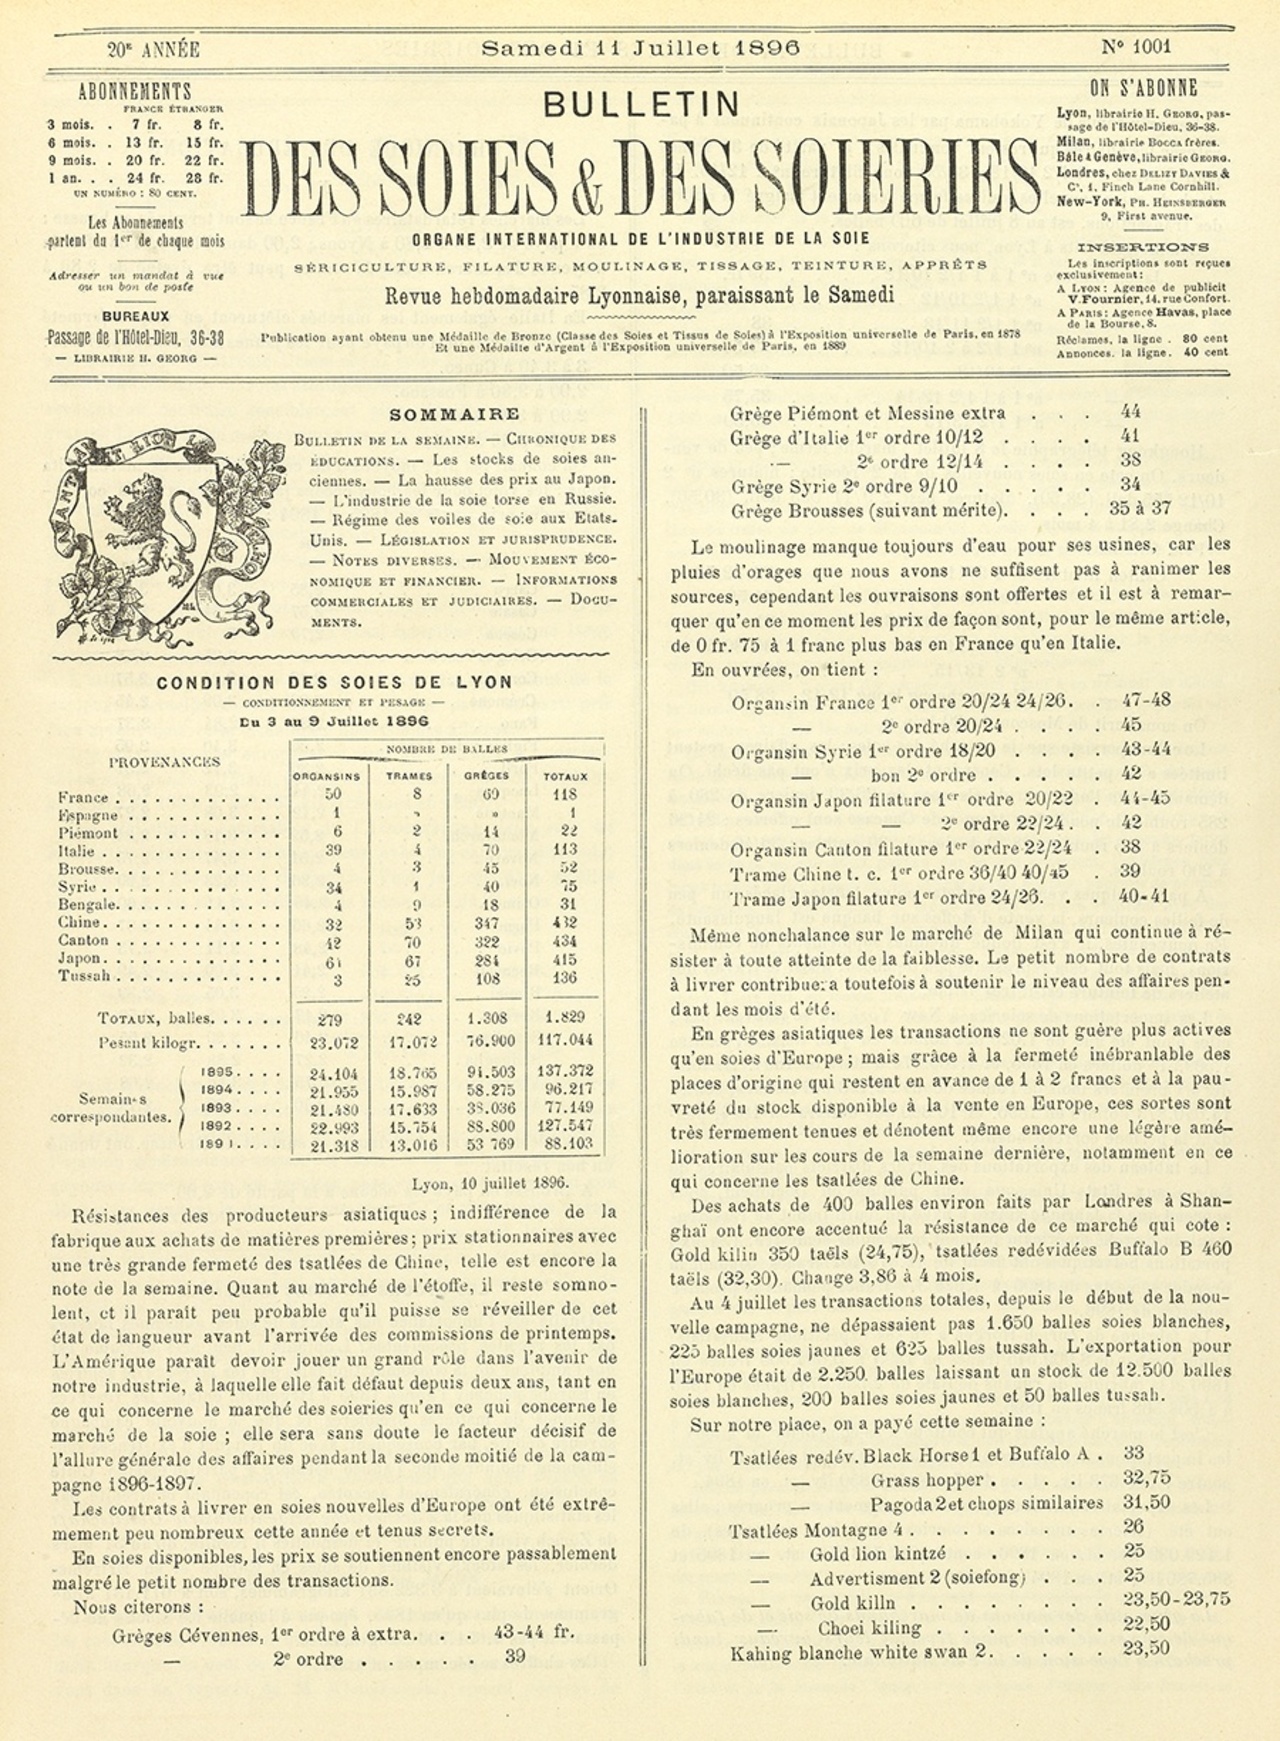 Bulletin des Soies et Soieries, n°1001, 11 juillet 1896.